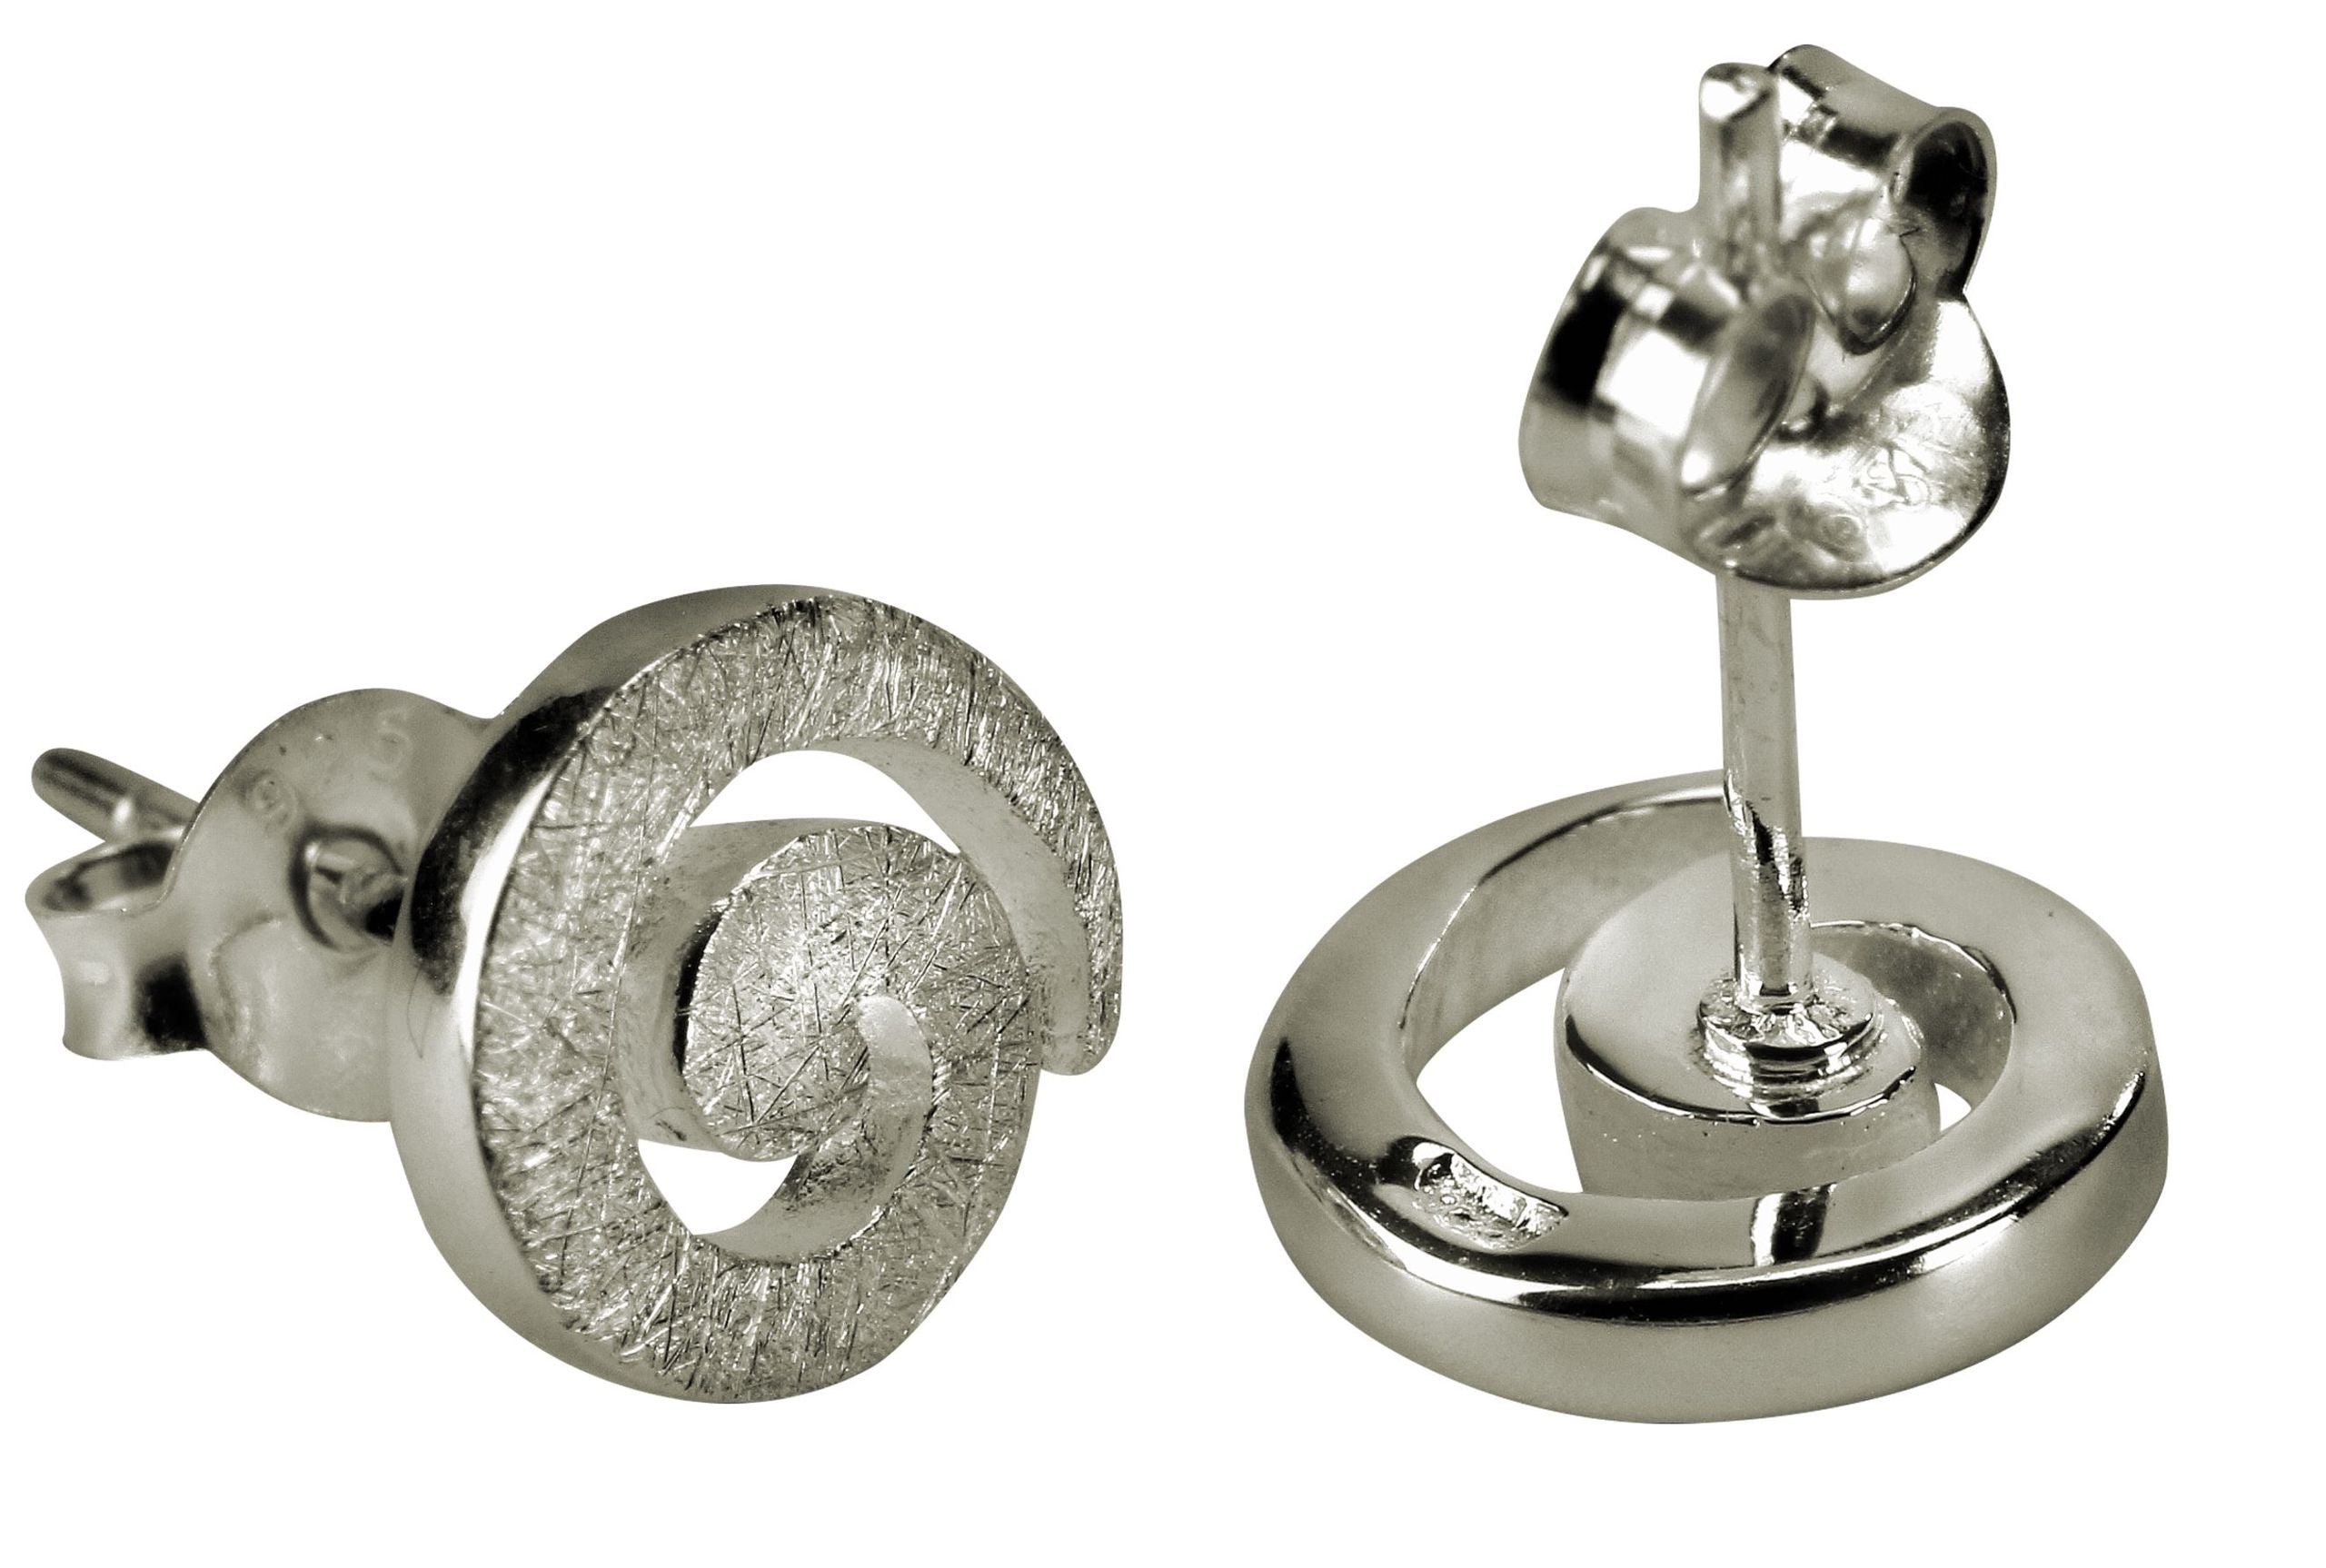 Ohrstecker aus Silber für Damen in geschwungener Spiralform mit einer gebürsteten Oberfläche.